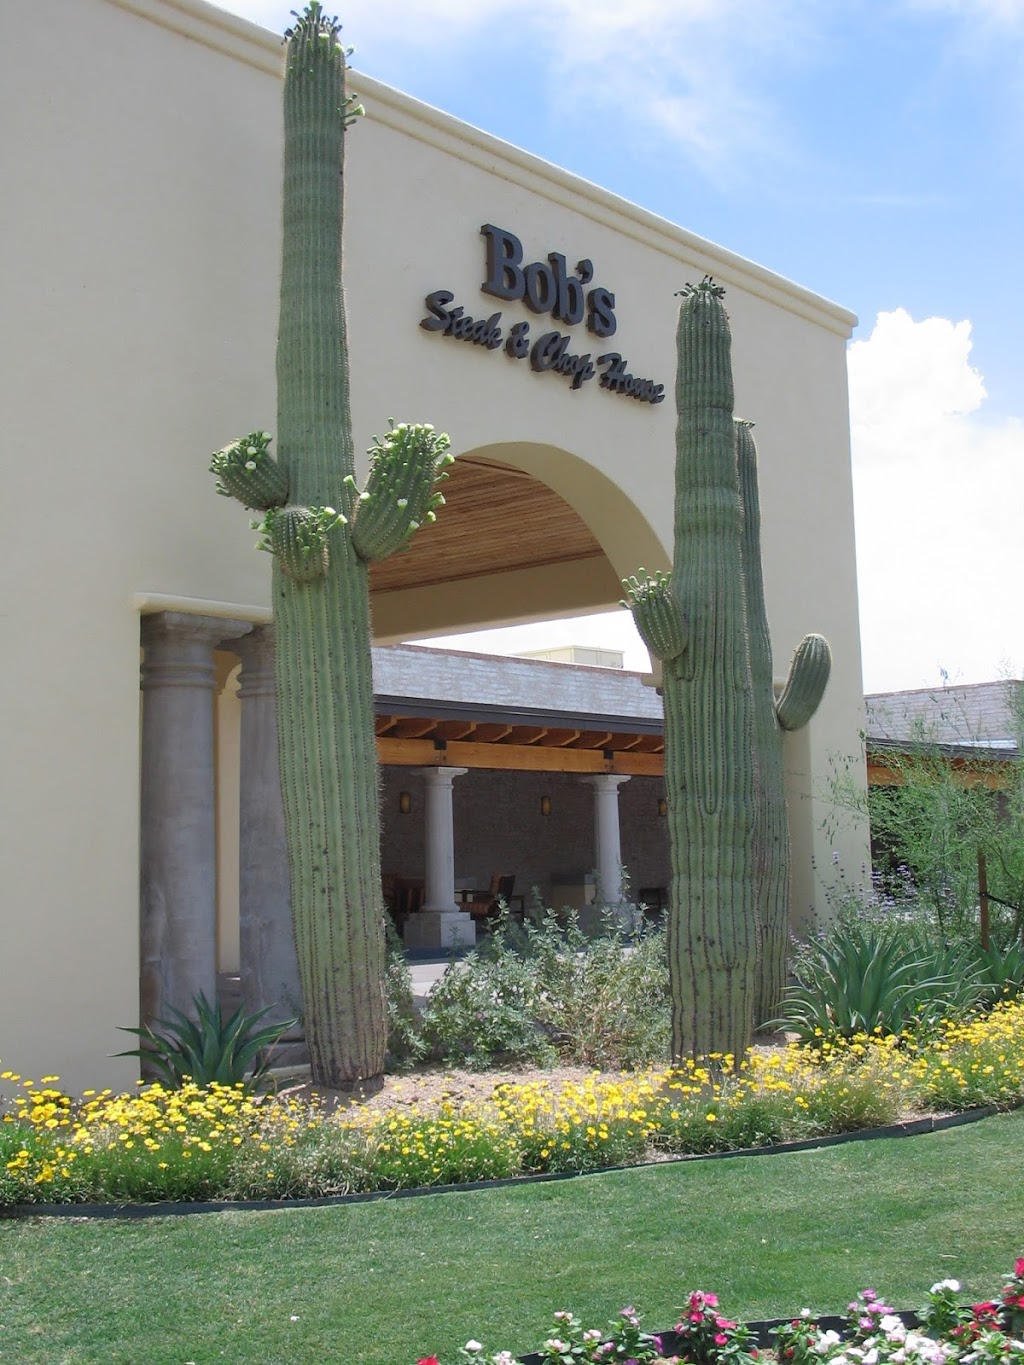 Bobs Steak & Chop House | 2727 W Club Dr, Tucson, AZ 85742, USA | Phone: (520) 877-2377